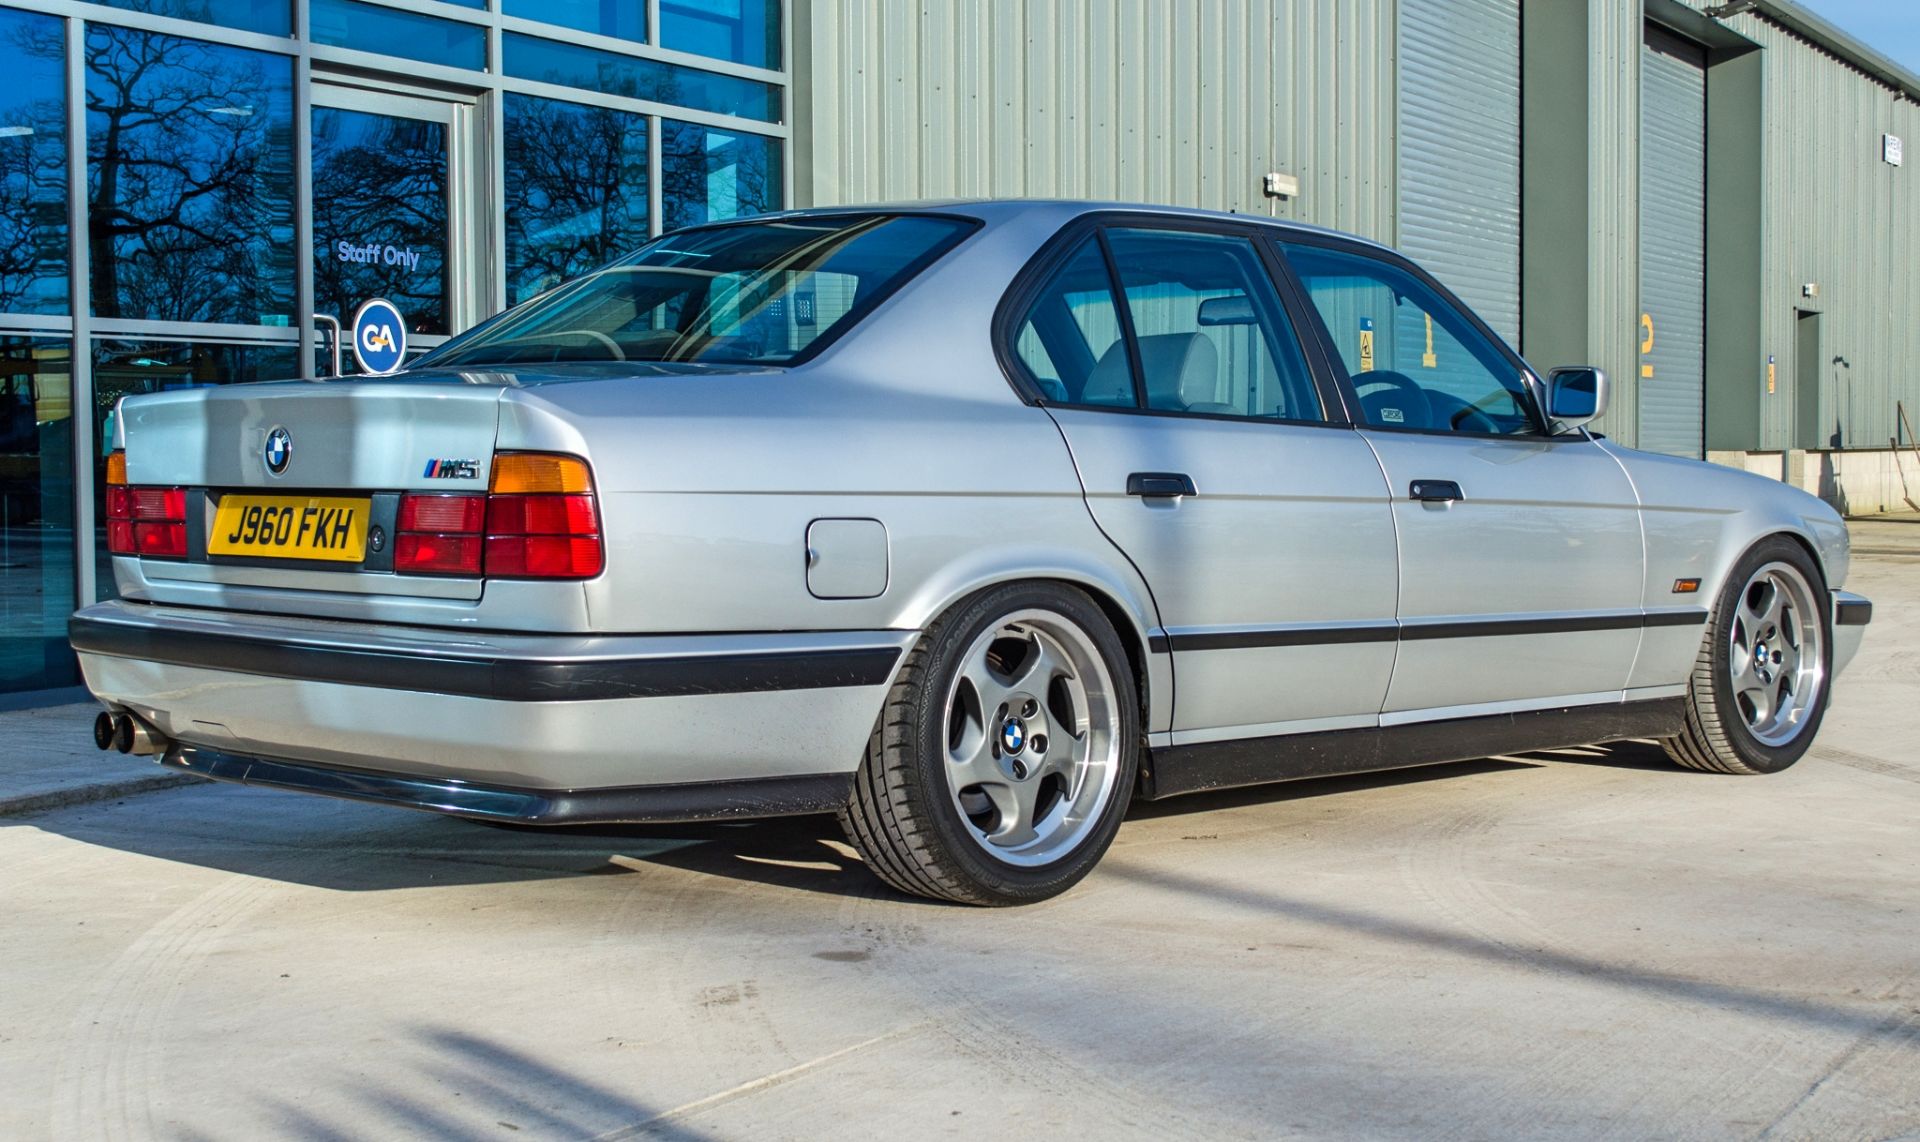 1991 BMW M5 E34 3.6 litre 4 door saloon - Image 6 of 59